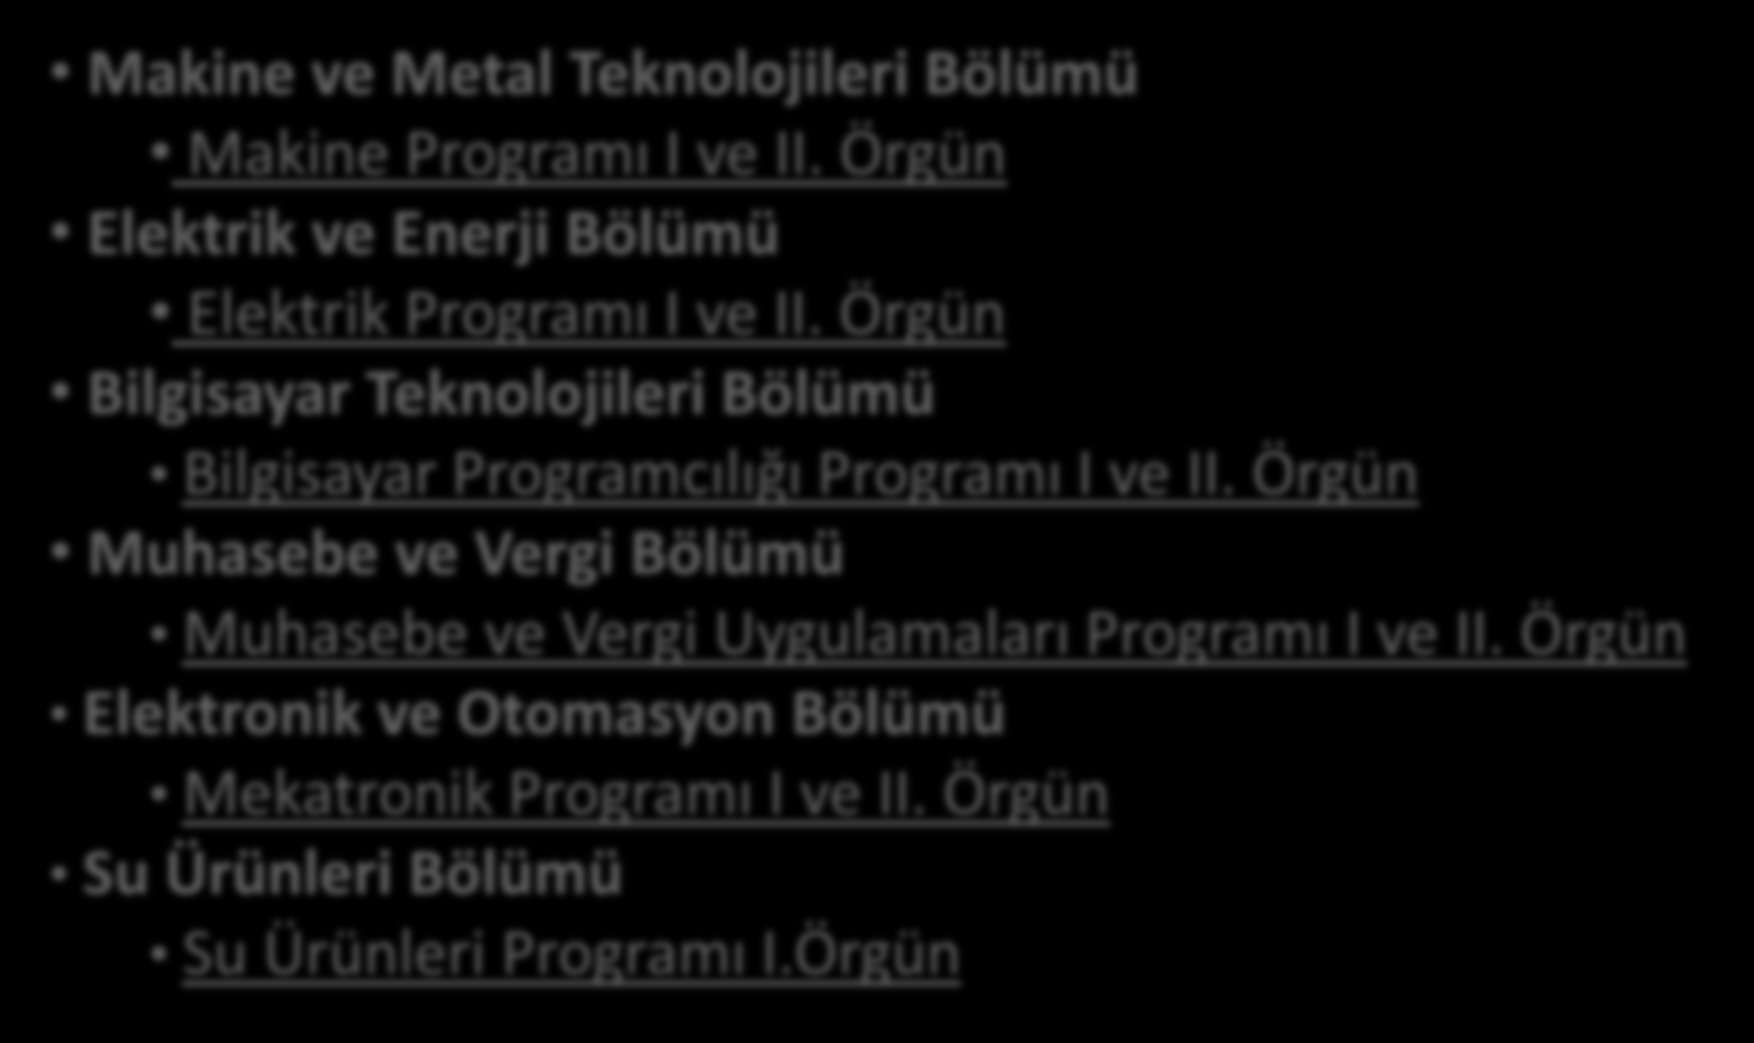 BÖLÜMLER Makine ve Metal Teknolojileri Bölümü Makine Programı I ve II. Örgün Elektrik ve Enerji Bölümü Elektrik Programı I ve II.